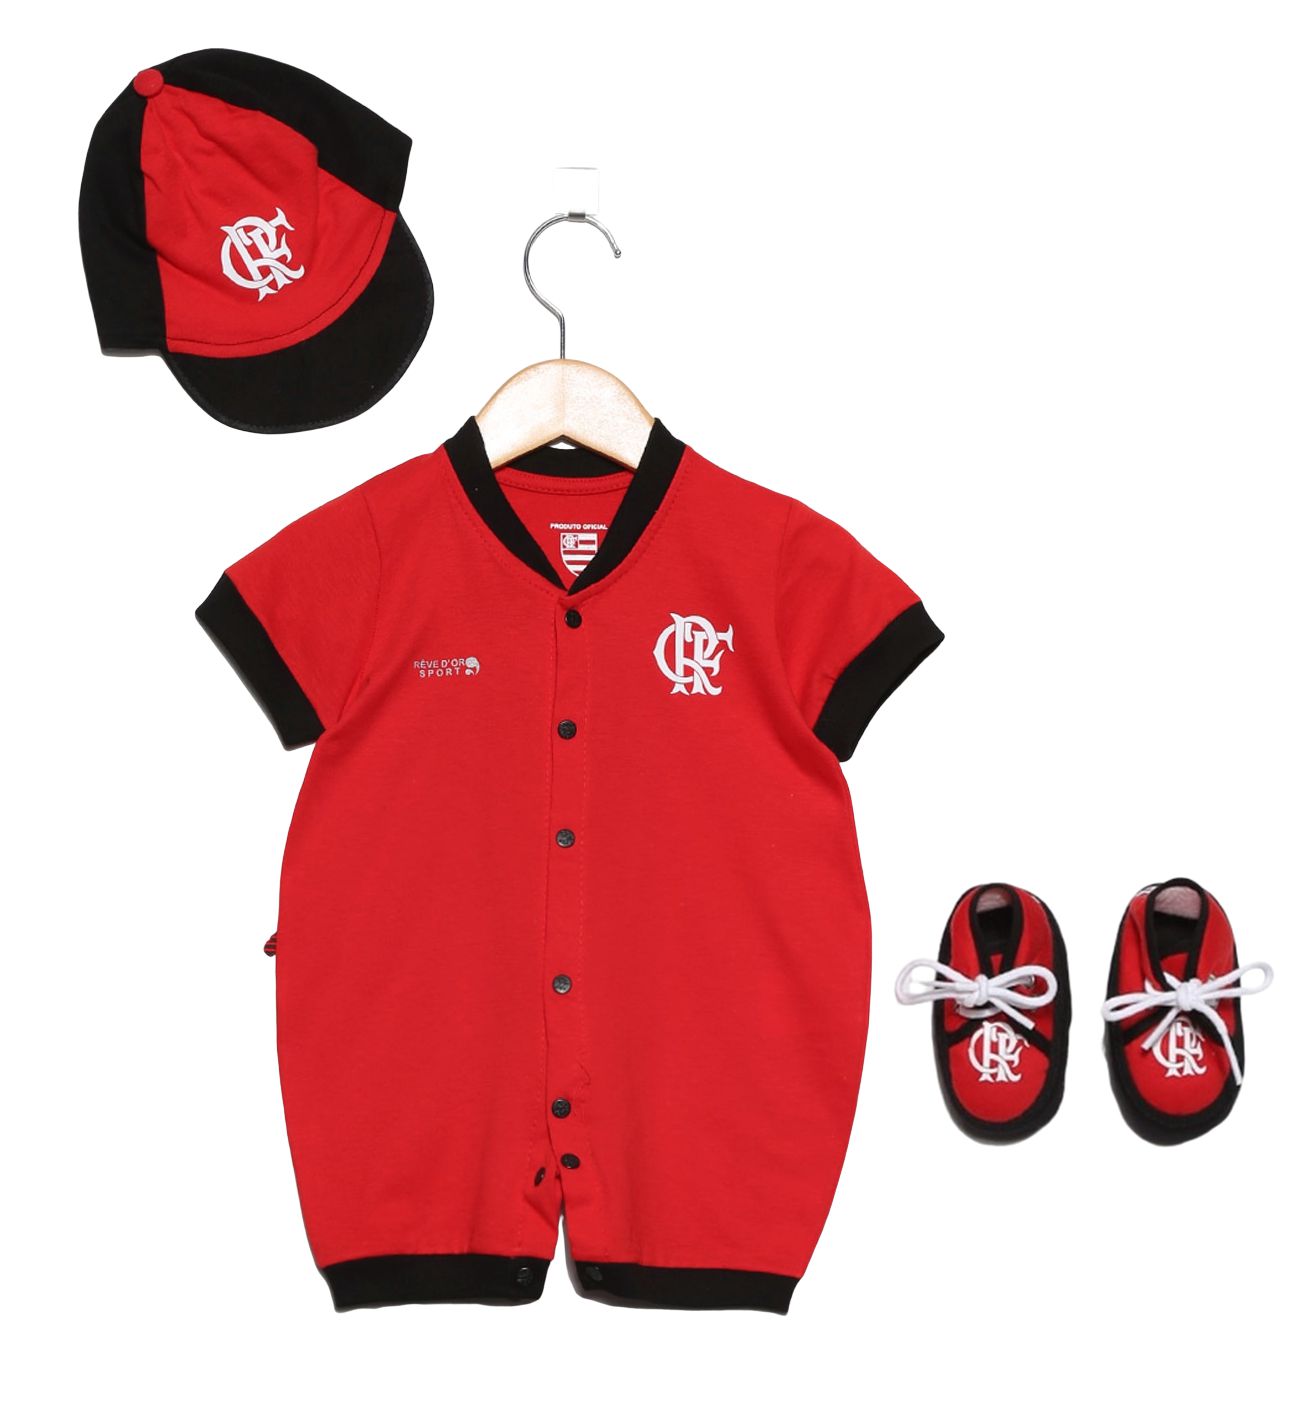 Kit 3 Camisas Do Flamengo Masculina Oficial Licenciado Tamanho:P